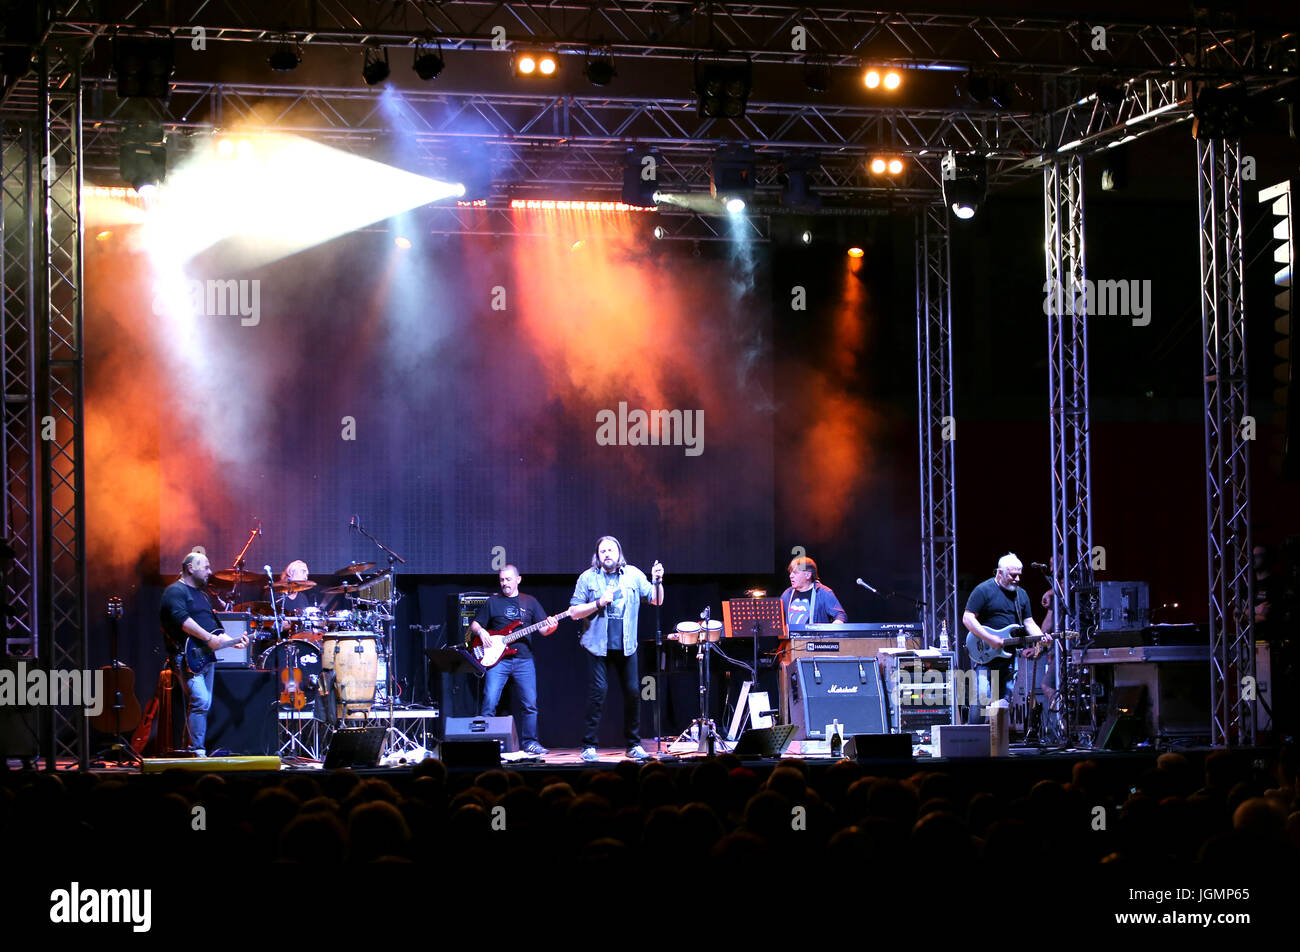 Bassano del Grappa, VI, Italia - 29 Aprile 2017: Nomadi una banda italiana sul palco durante il concerto dal vivo in Italia Foto Stock